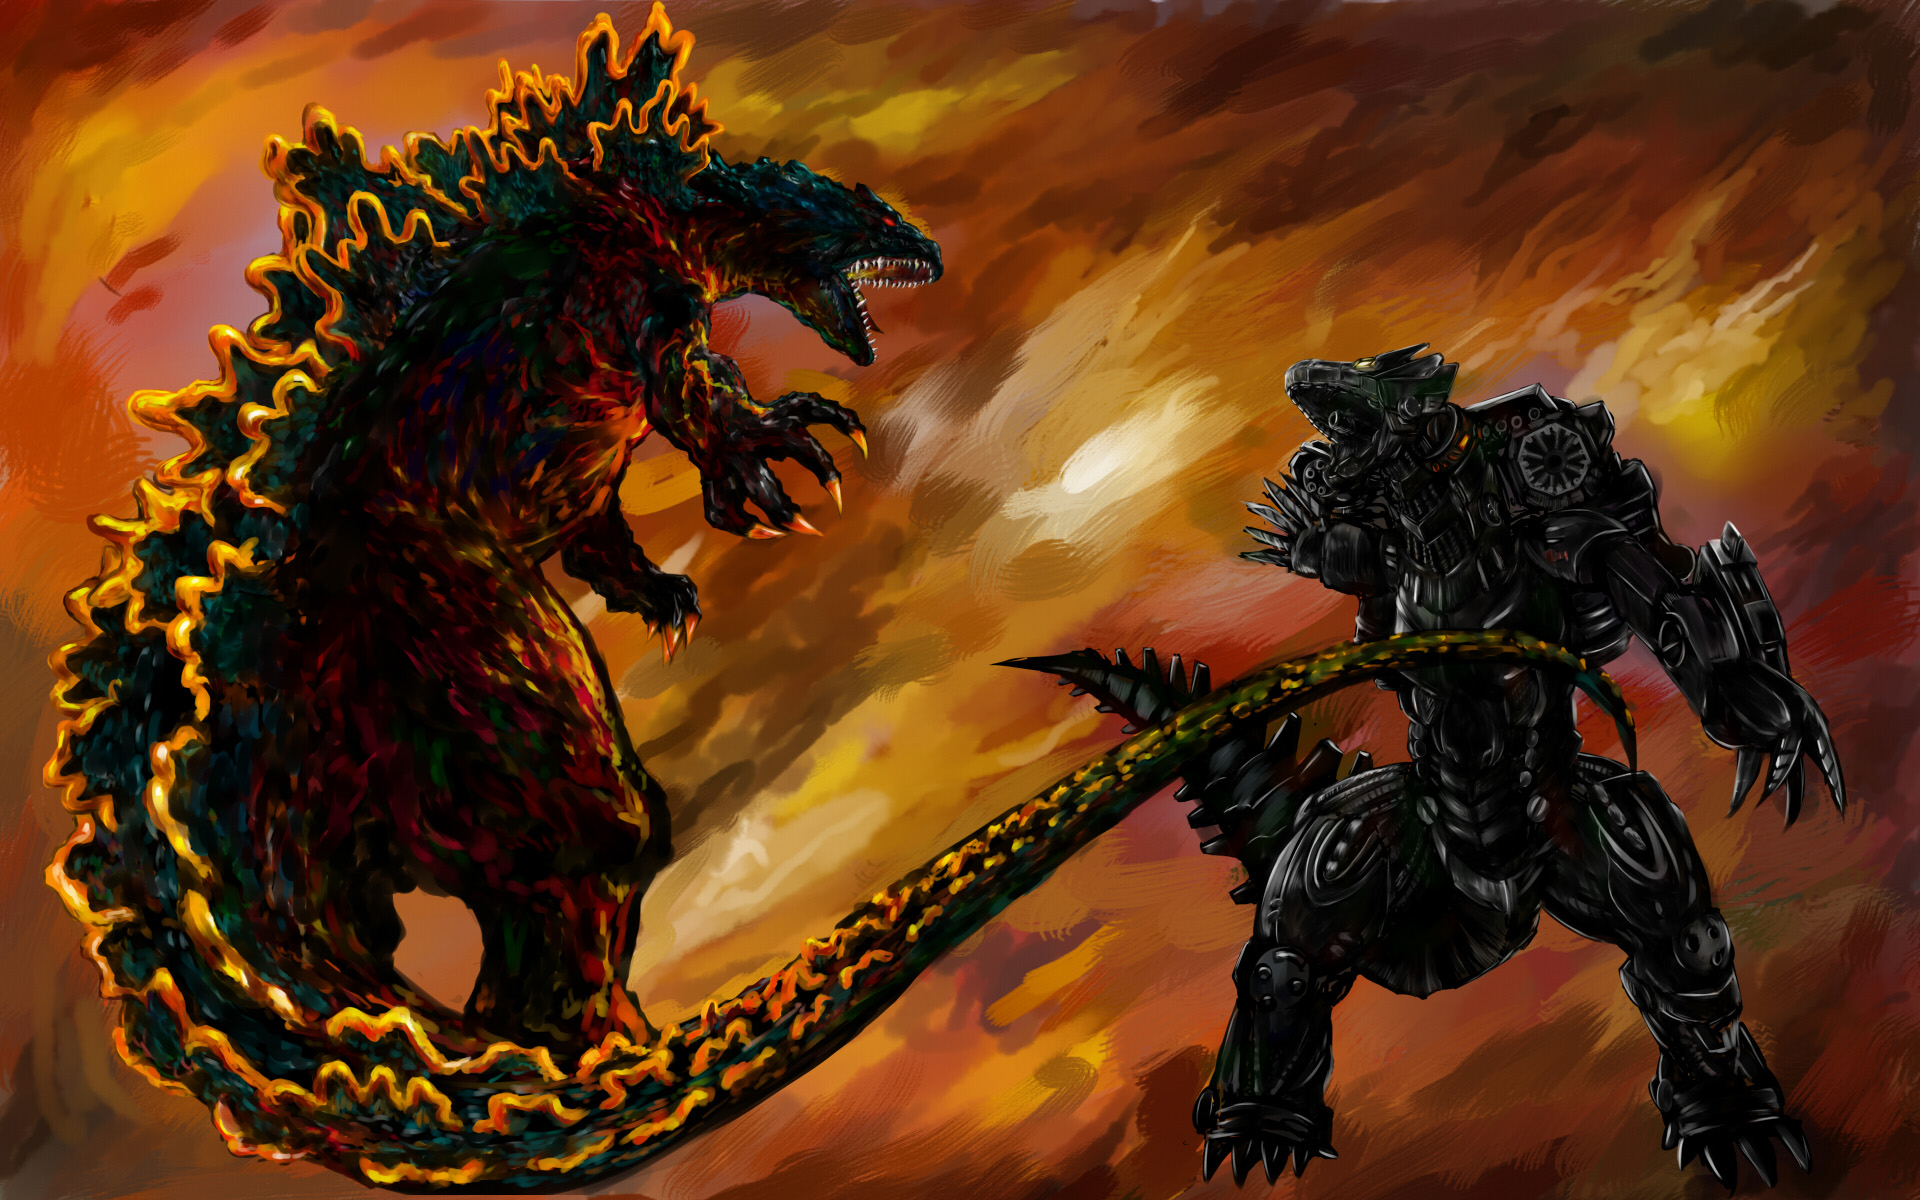 圧倒的破壊力 大迫力 戦うゴジライラスト集の画像 11 Godzilla